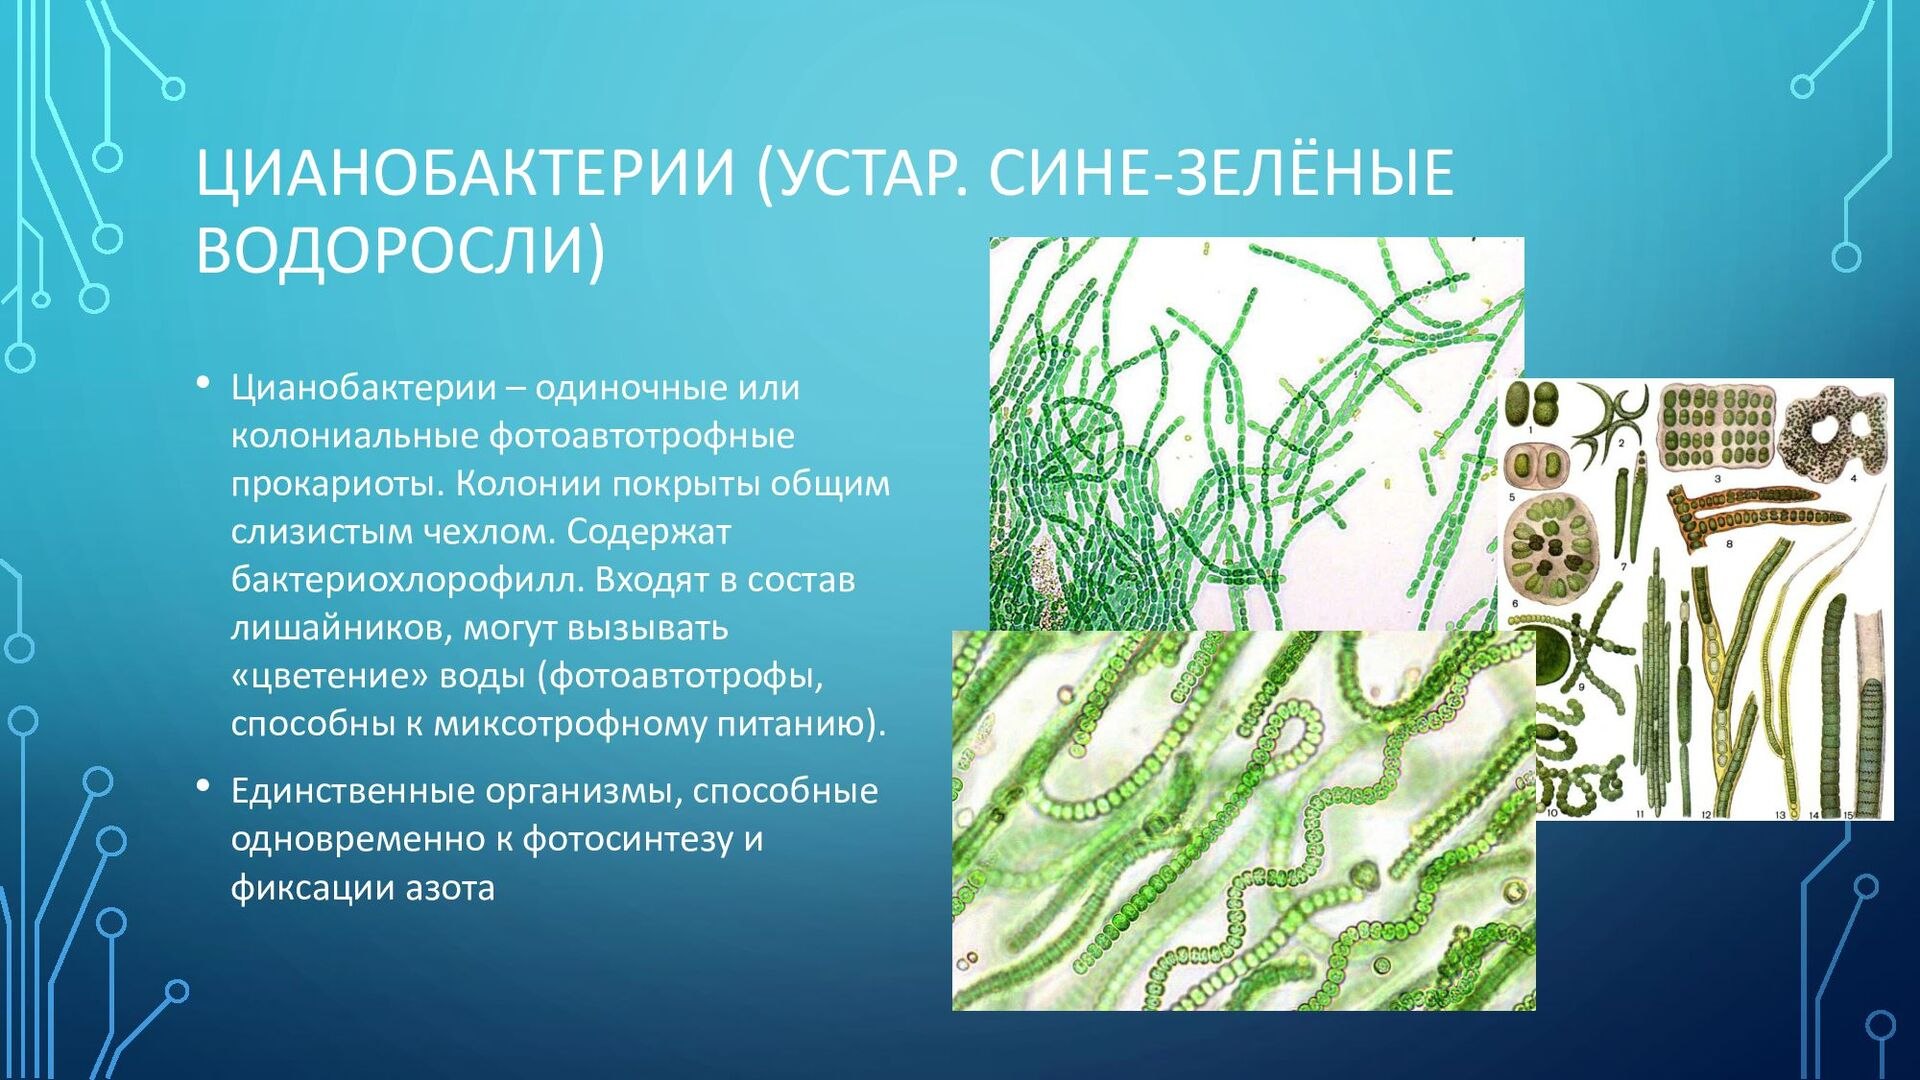 Водоросли входят в состав. Цианобактерии сине-зеленые водоросли. Хамесифоновые цианобактерии. Фотосинтезирующие цианобактерии. Цианобактерии в лишайниках.